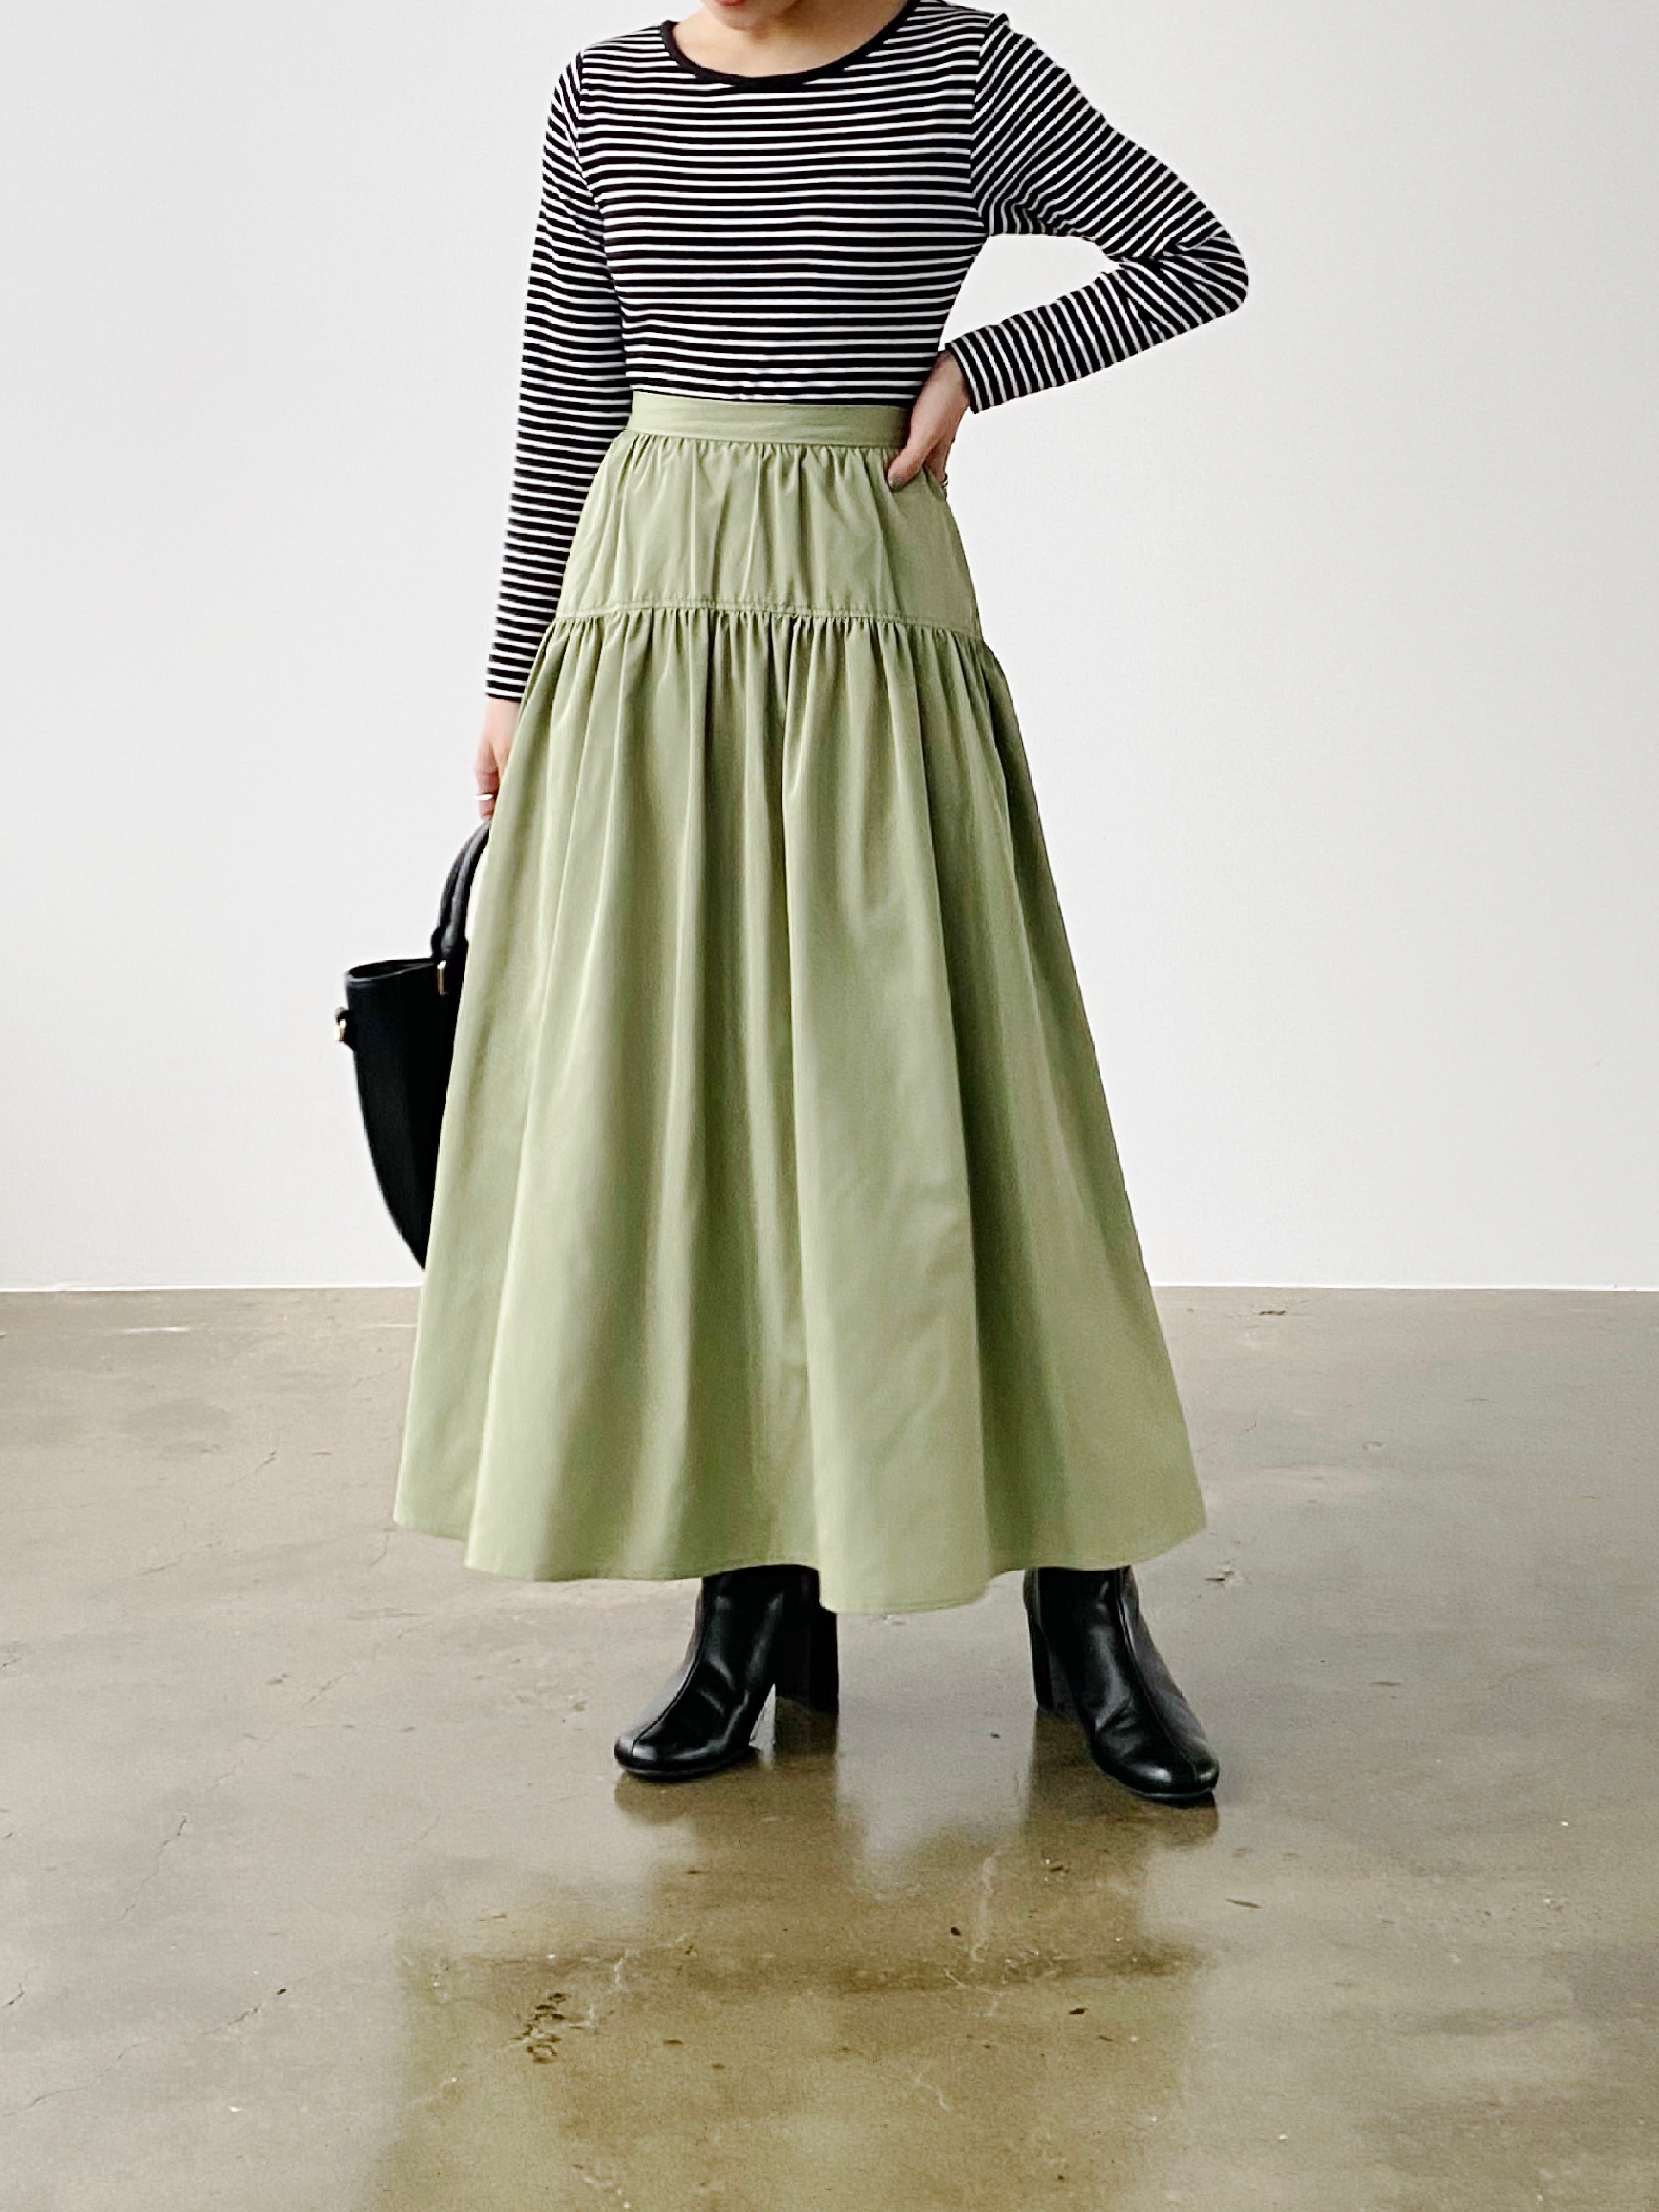 PRADA】プラダ バイカラー 裾切り替え ギャザースカート 42 L 高級